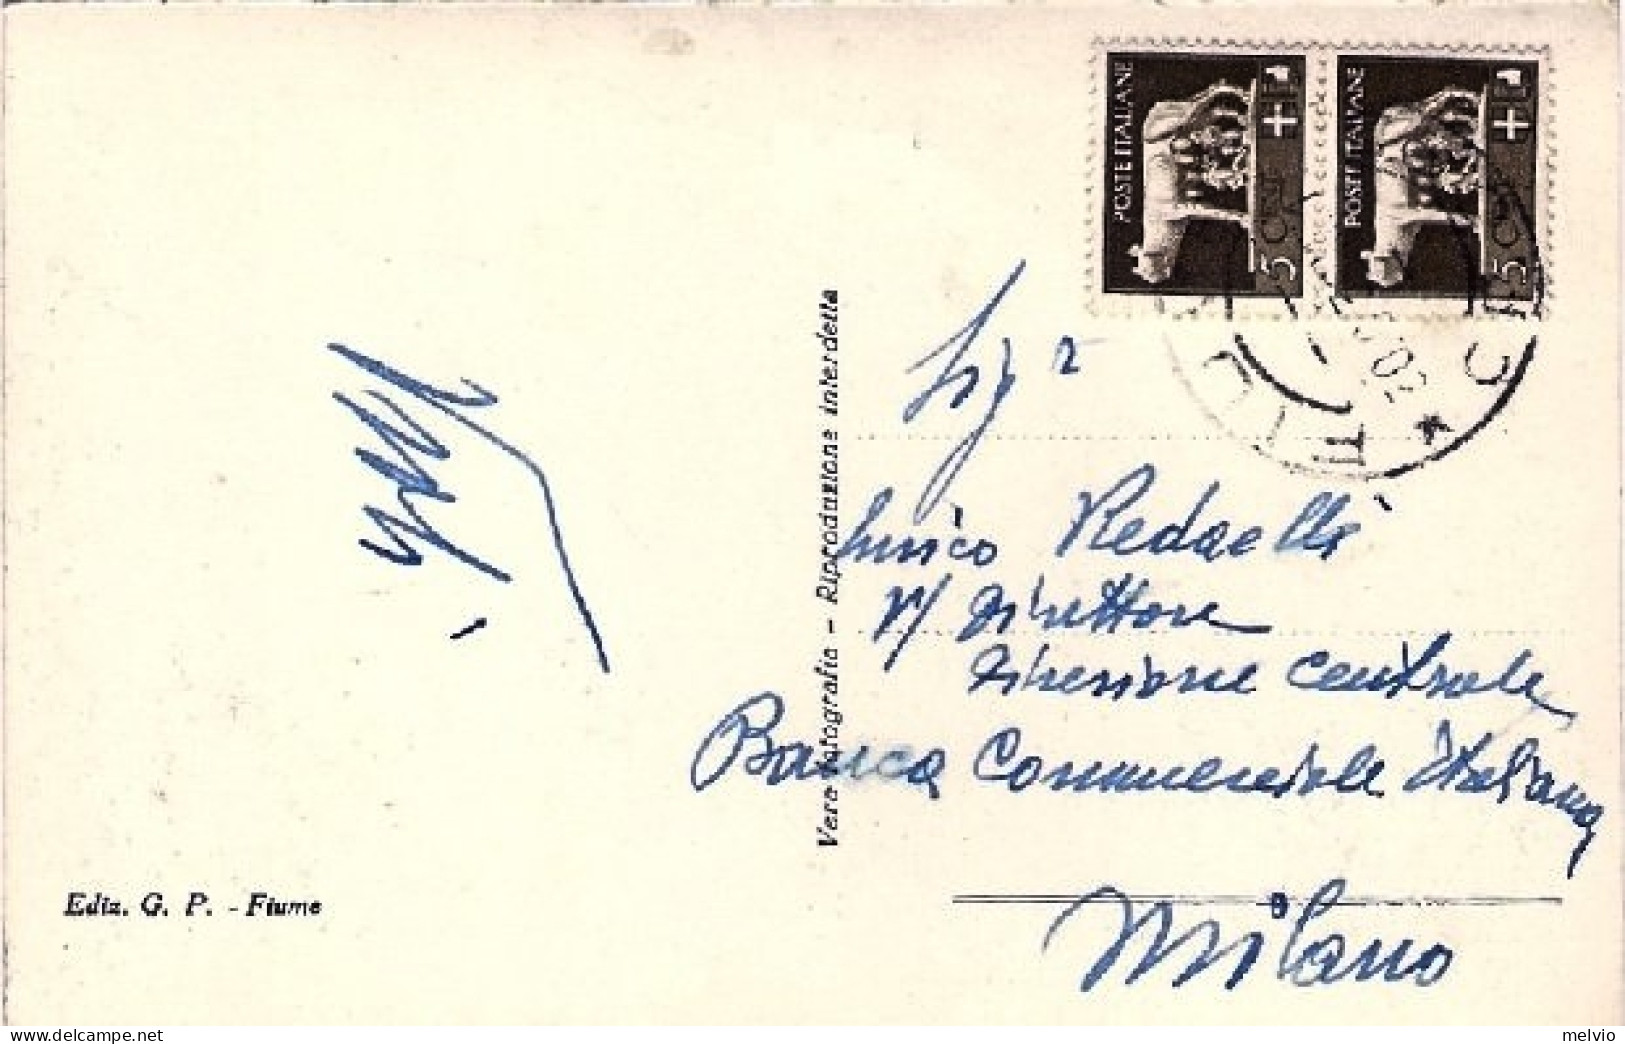 1939-cartolina Foto Fiume-porto-riva Emanuele Filiberto Affrancata Coppia 5c. Im - Croatie